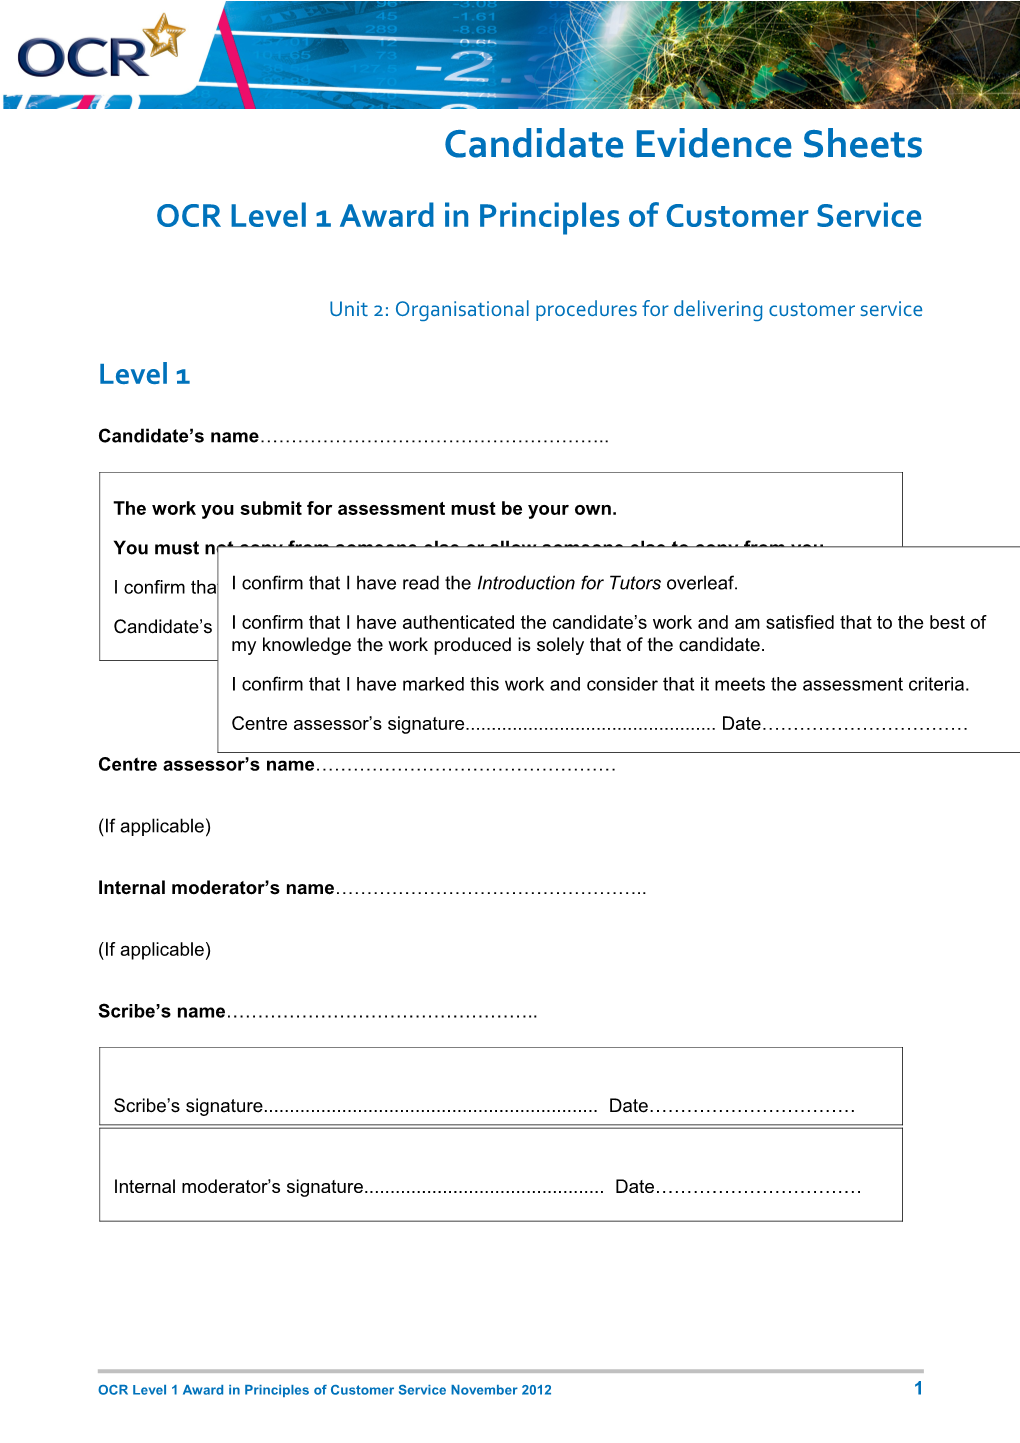 Unit 2 Organisational Procedures for Delivering Customer Service